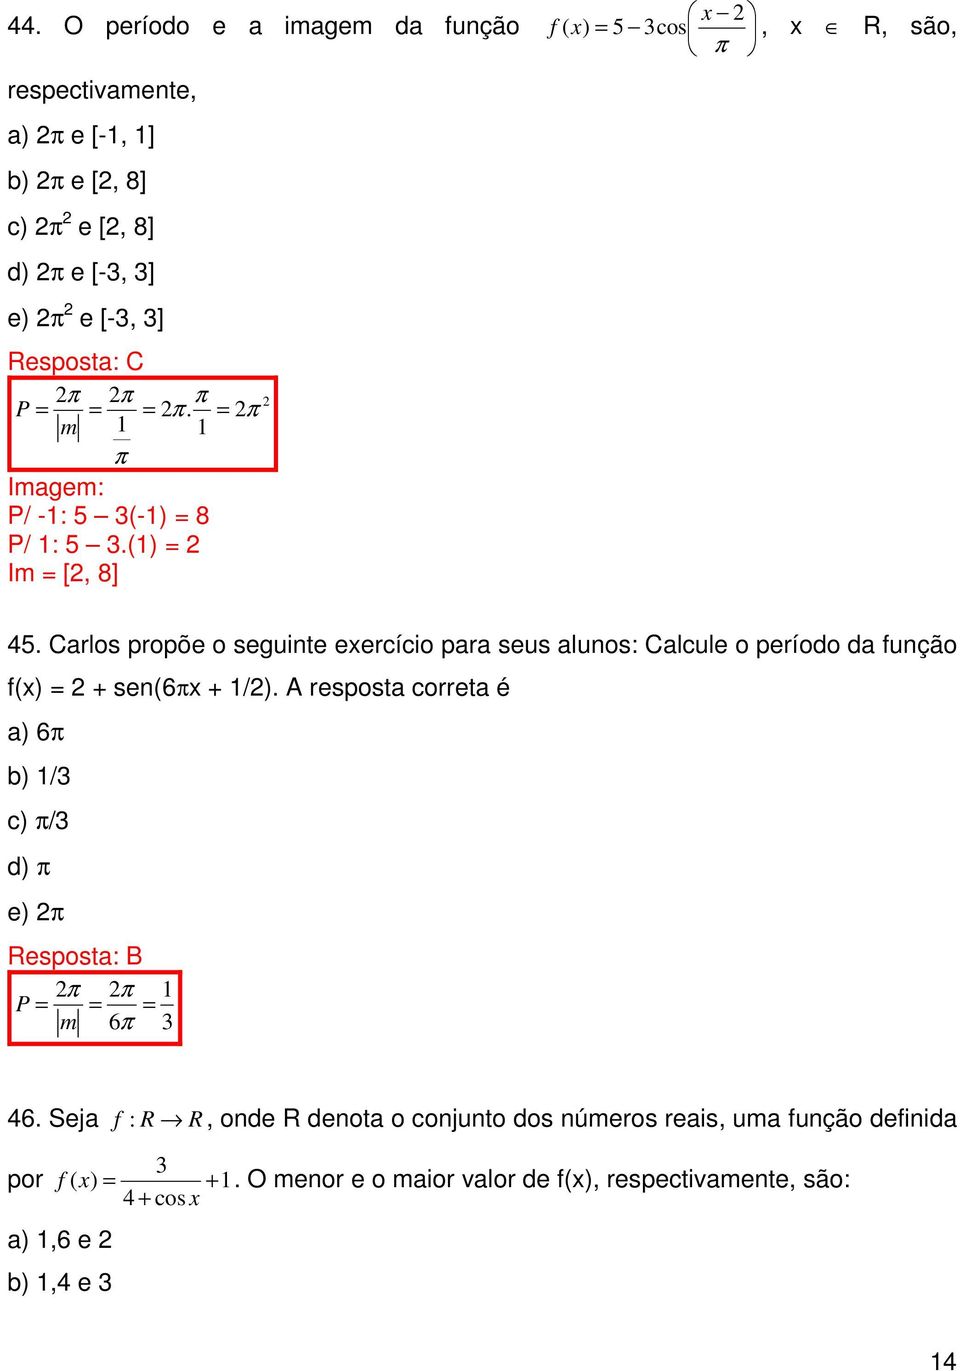 Carlos propõe o seguinte exercício para seus alunos: Calcule o período da função f(x) + sen(6πx + 1/).